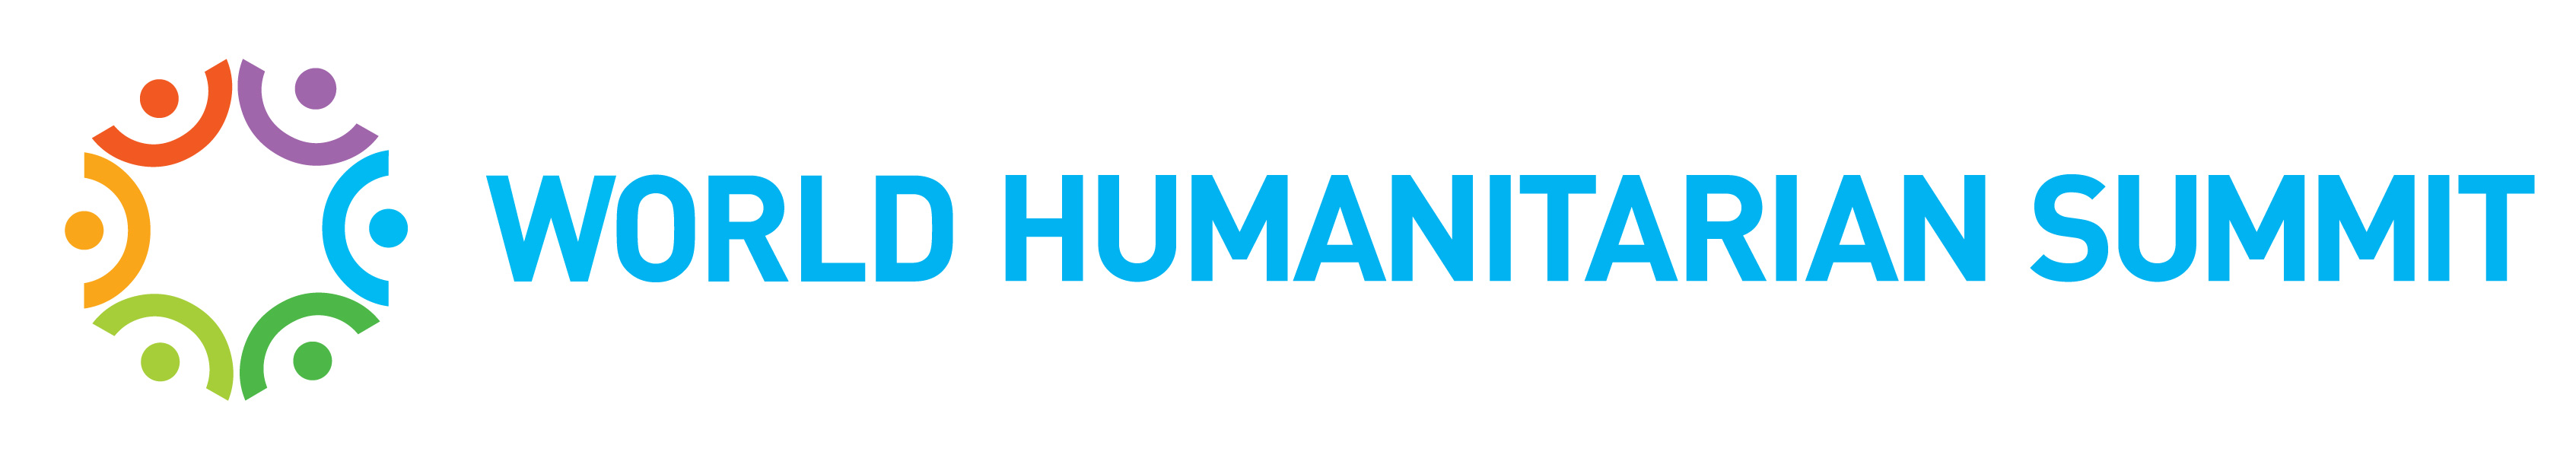 World Humanitarian Summit  - Istanbul, 23-24 May 2016